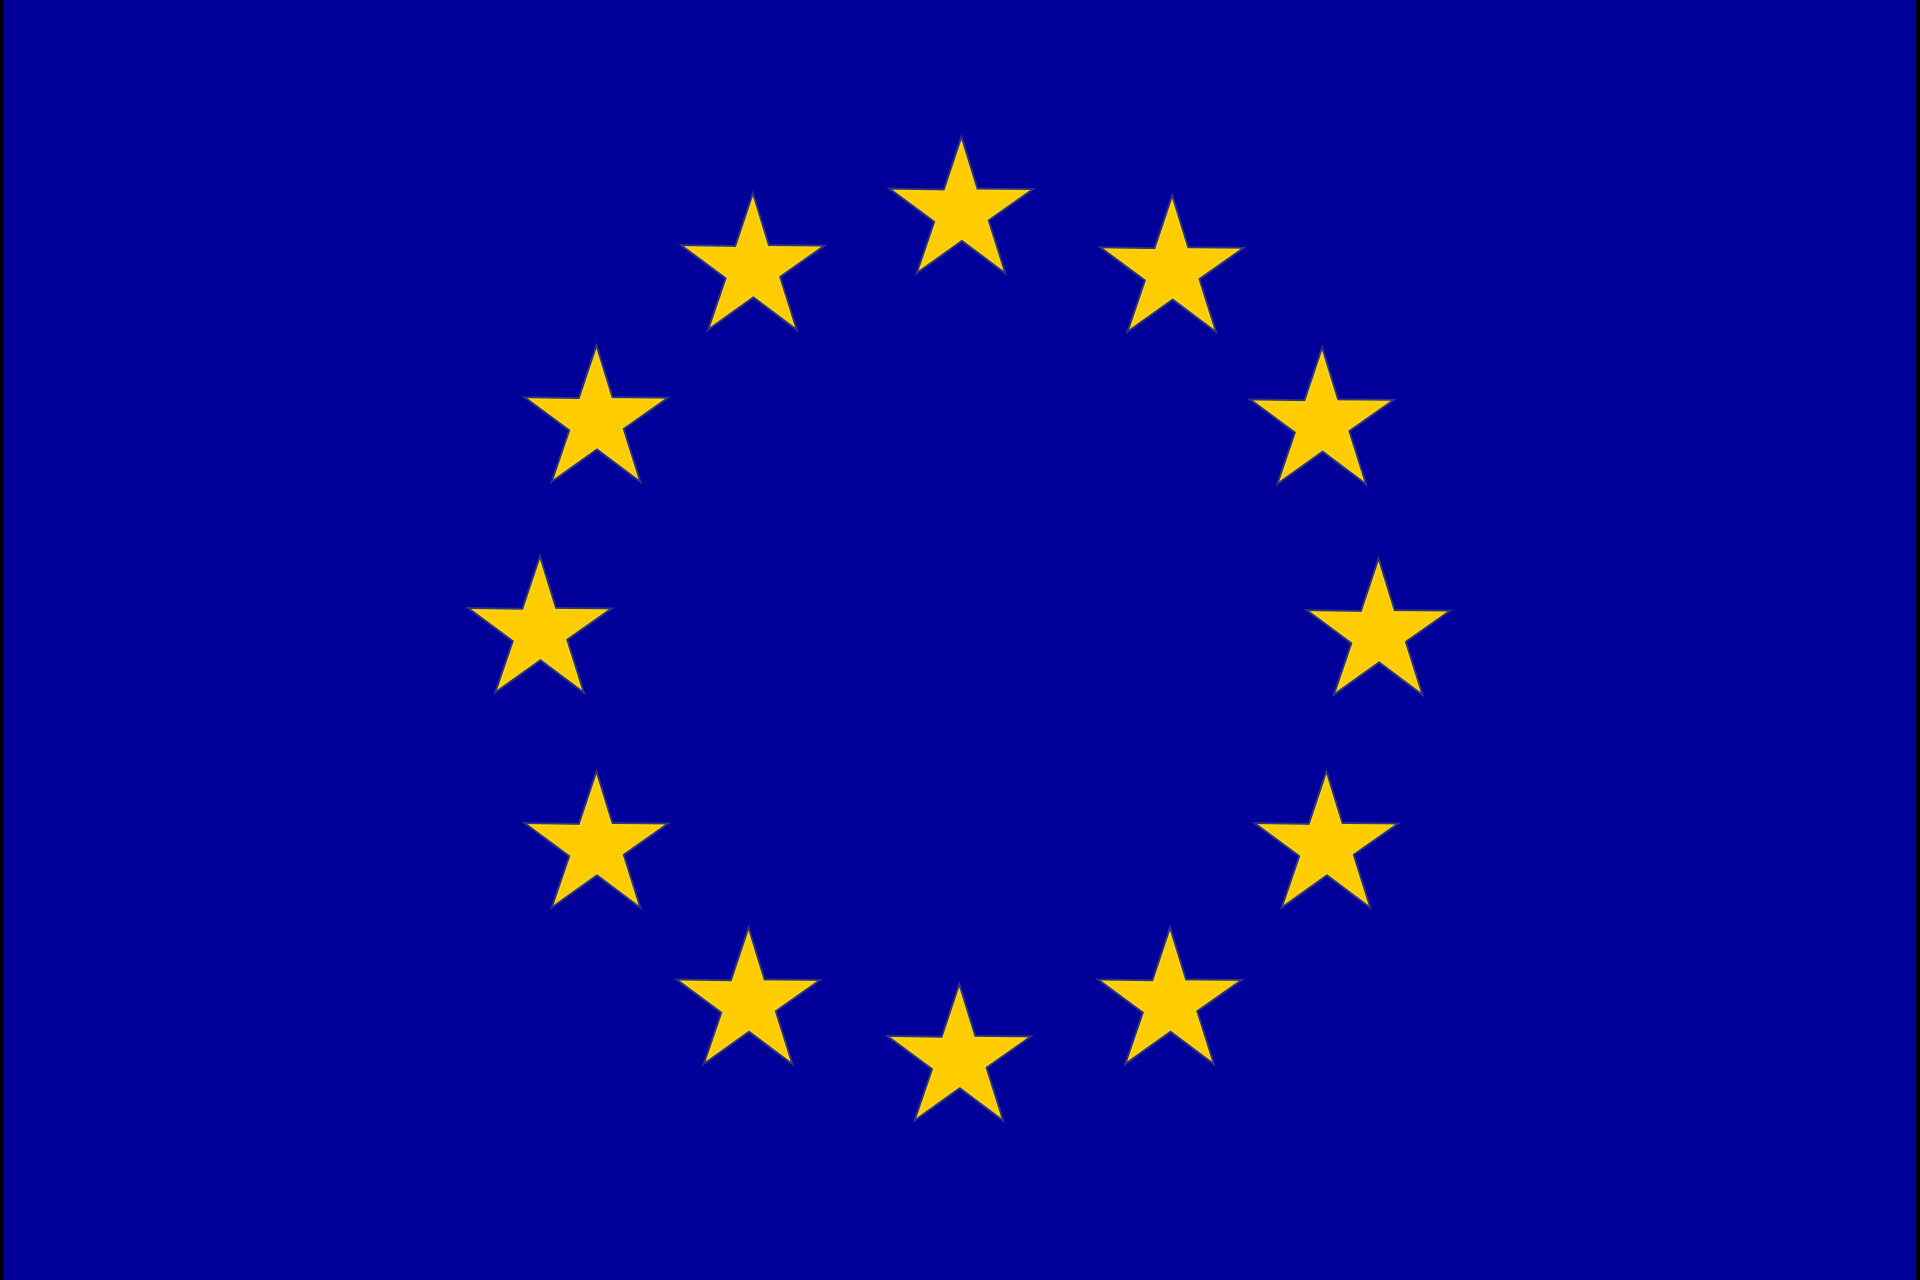 Die Flage der Europäischen Union, des Europarates